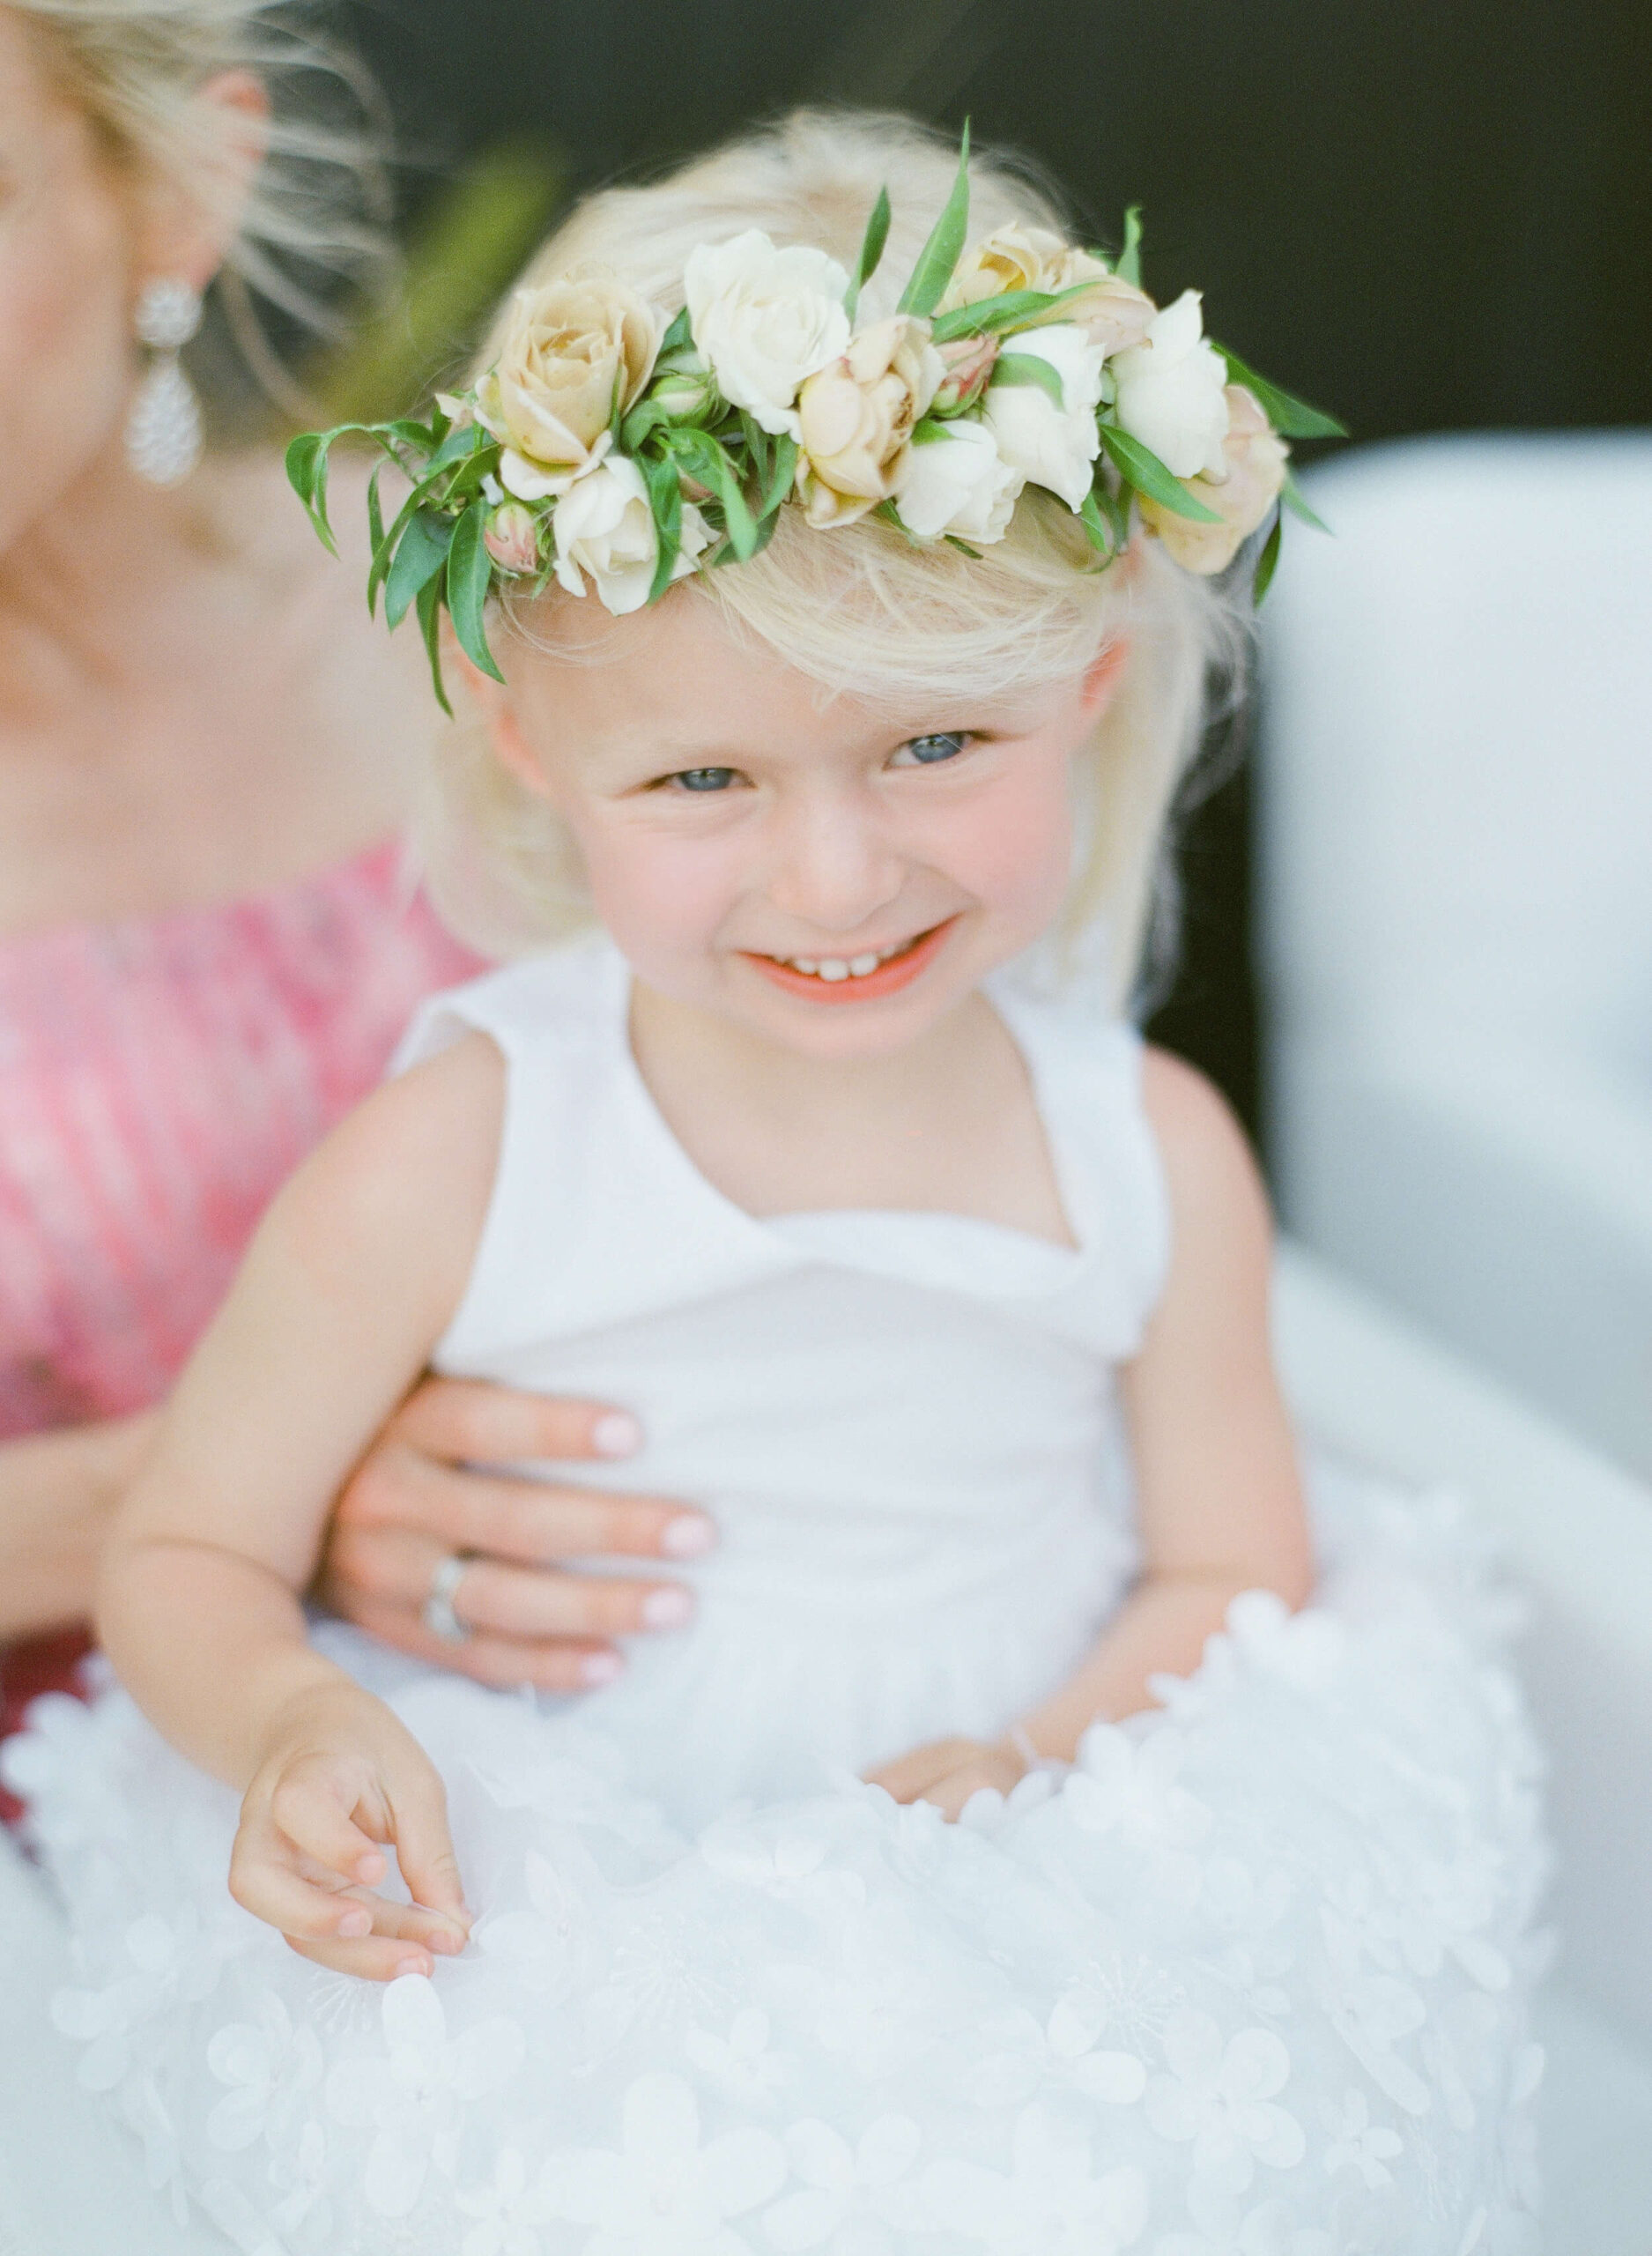 Child in flower crown